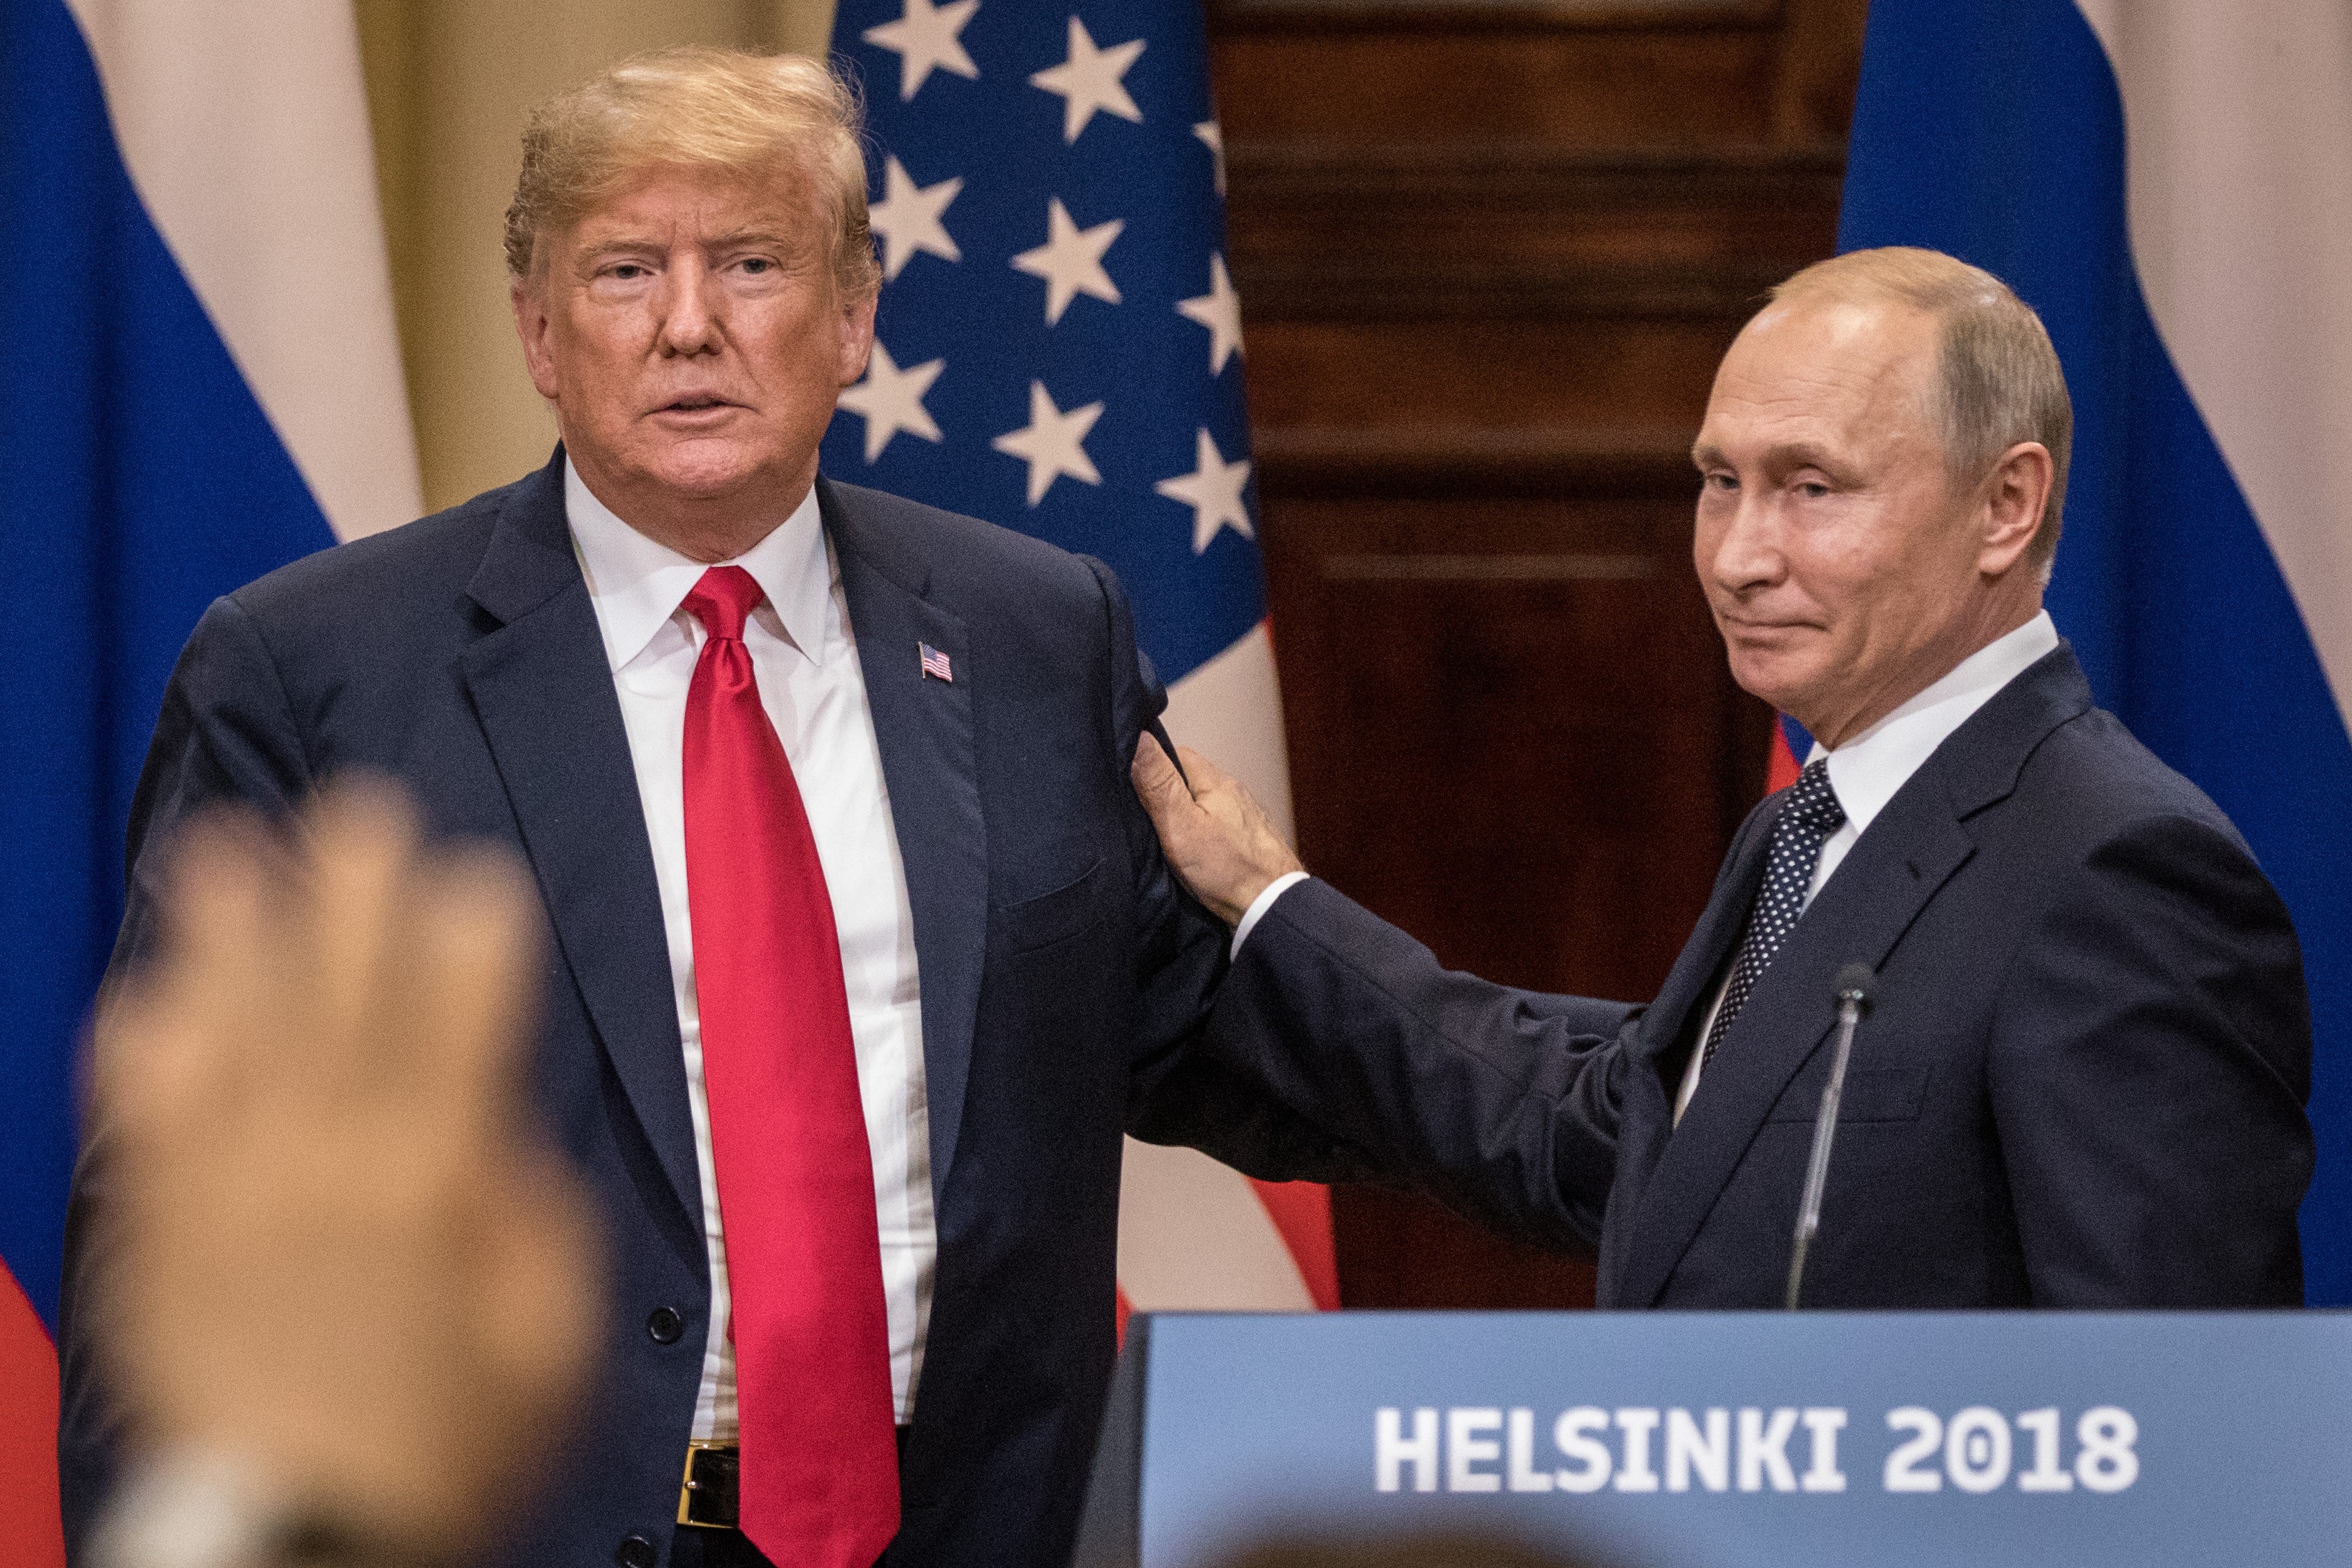 Donald Trump e Vladirmir Putin em evento na Finlândia em 2018 (Foto: Getty Images)